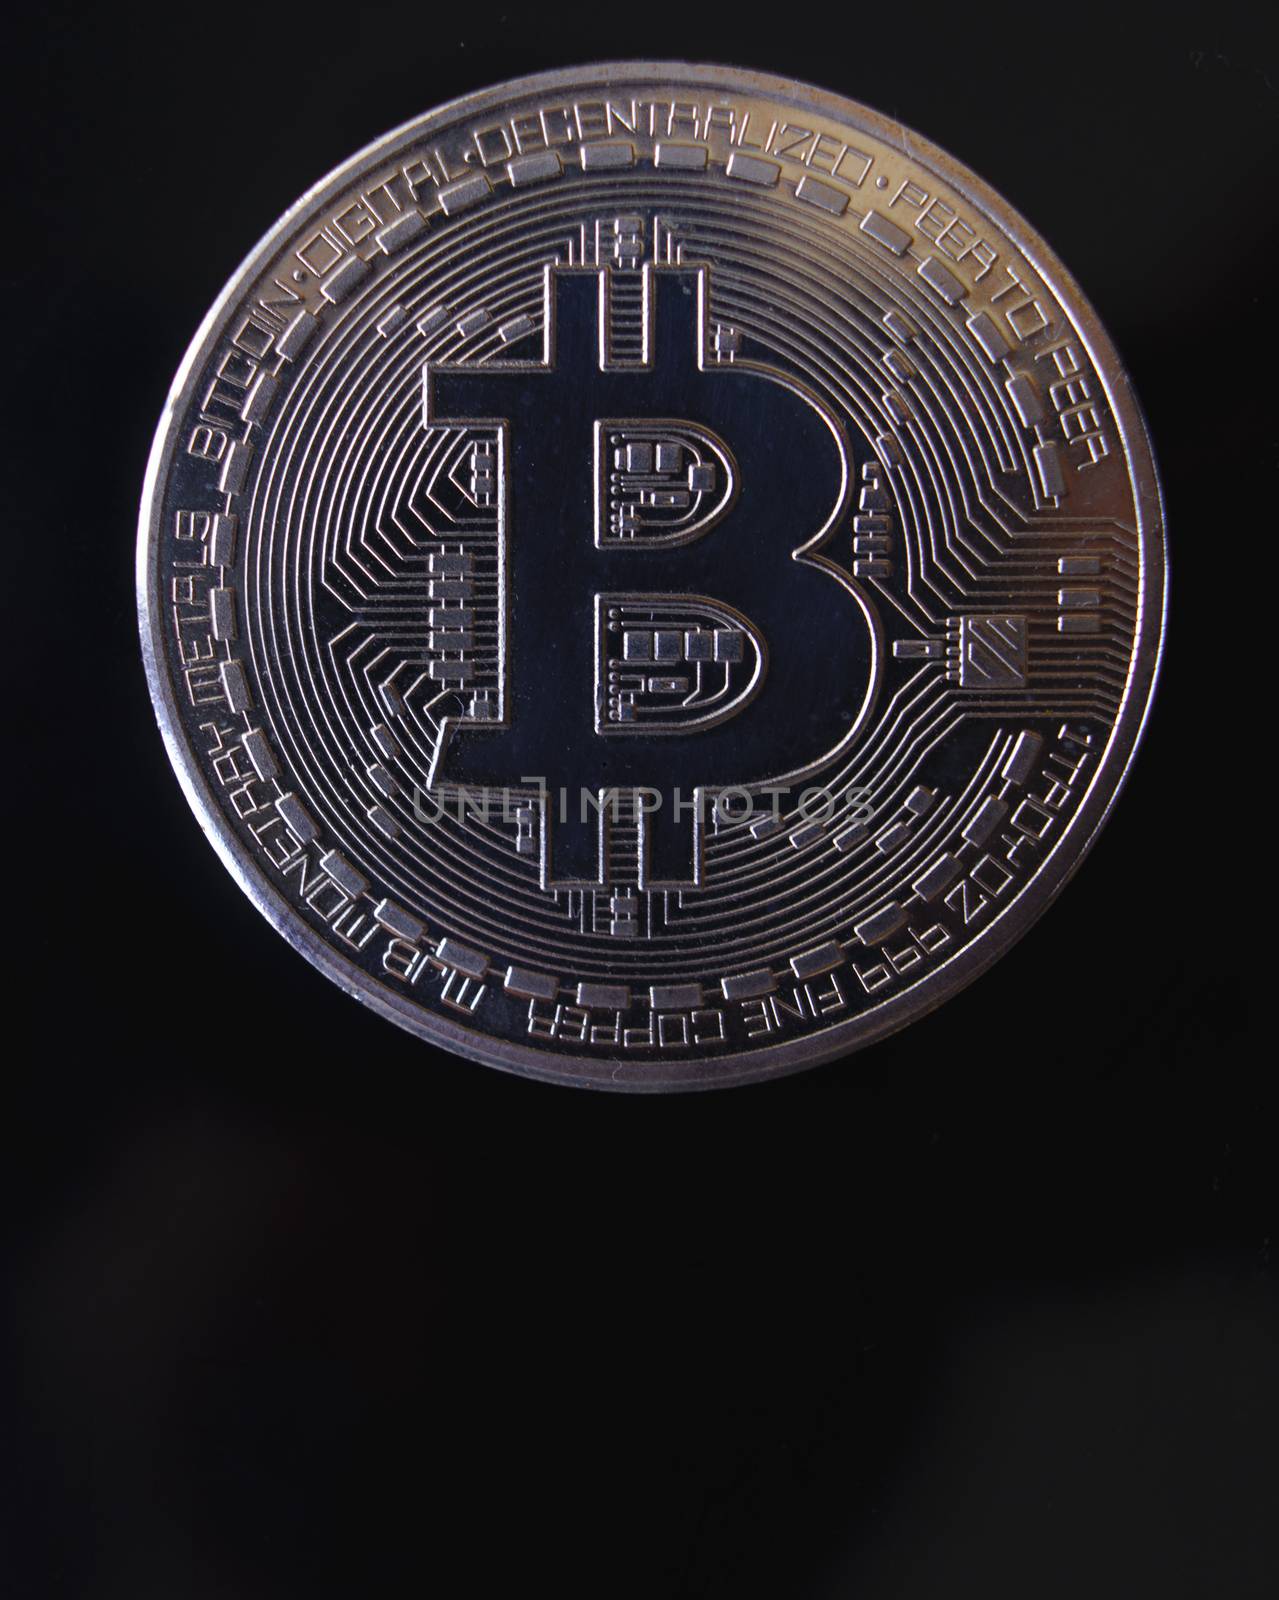 Silver souvenir coin Bitcoin on a black background.